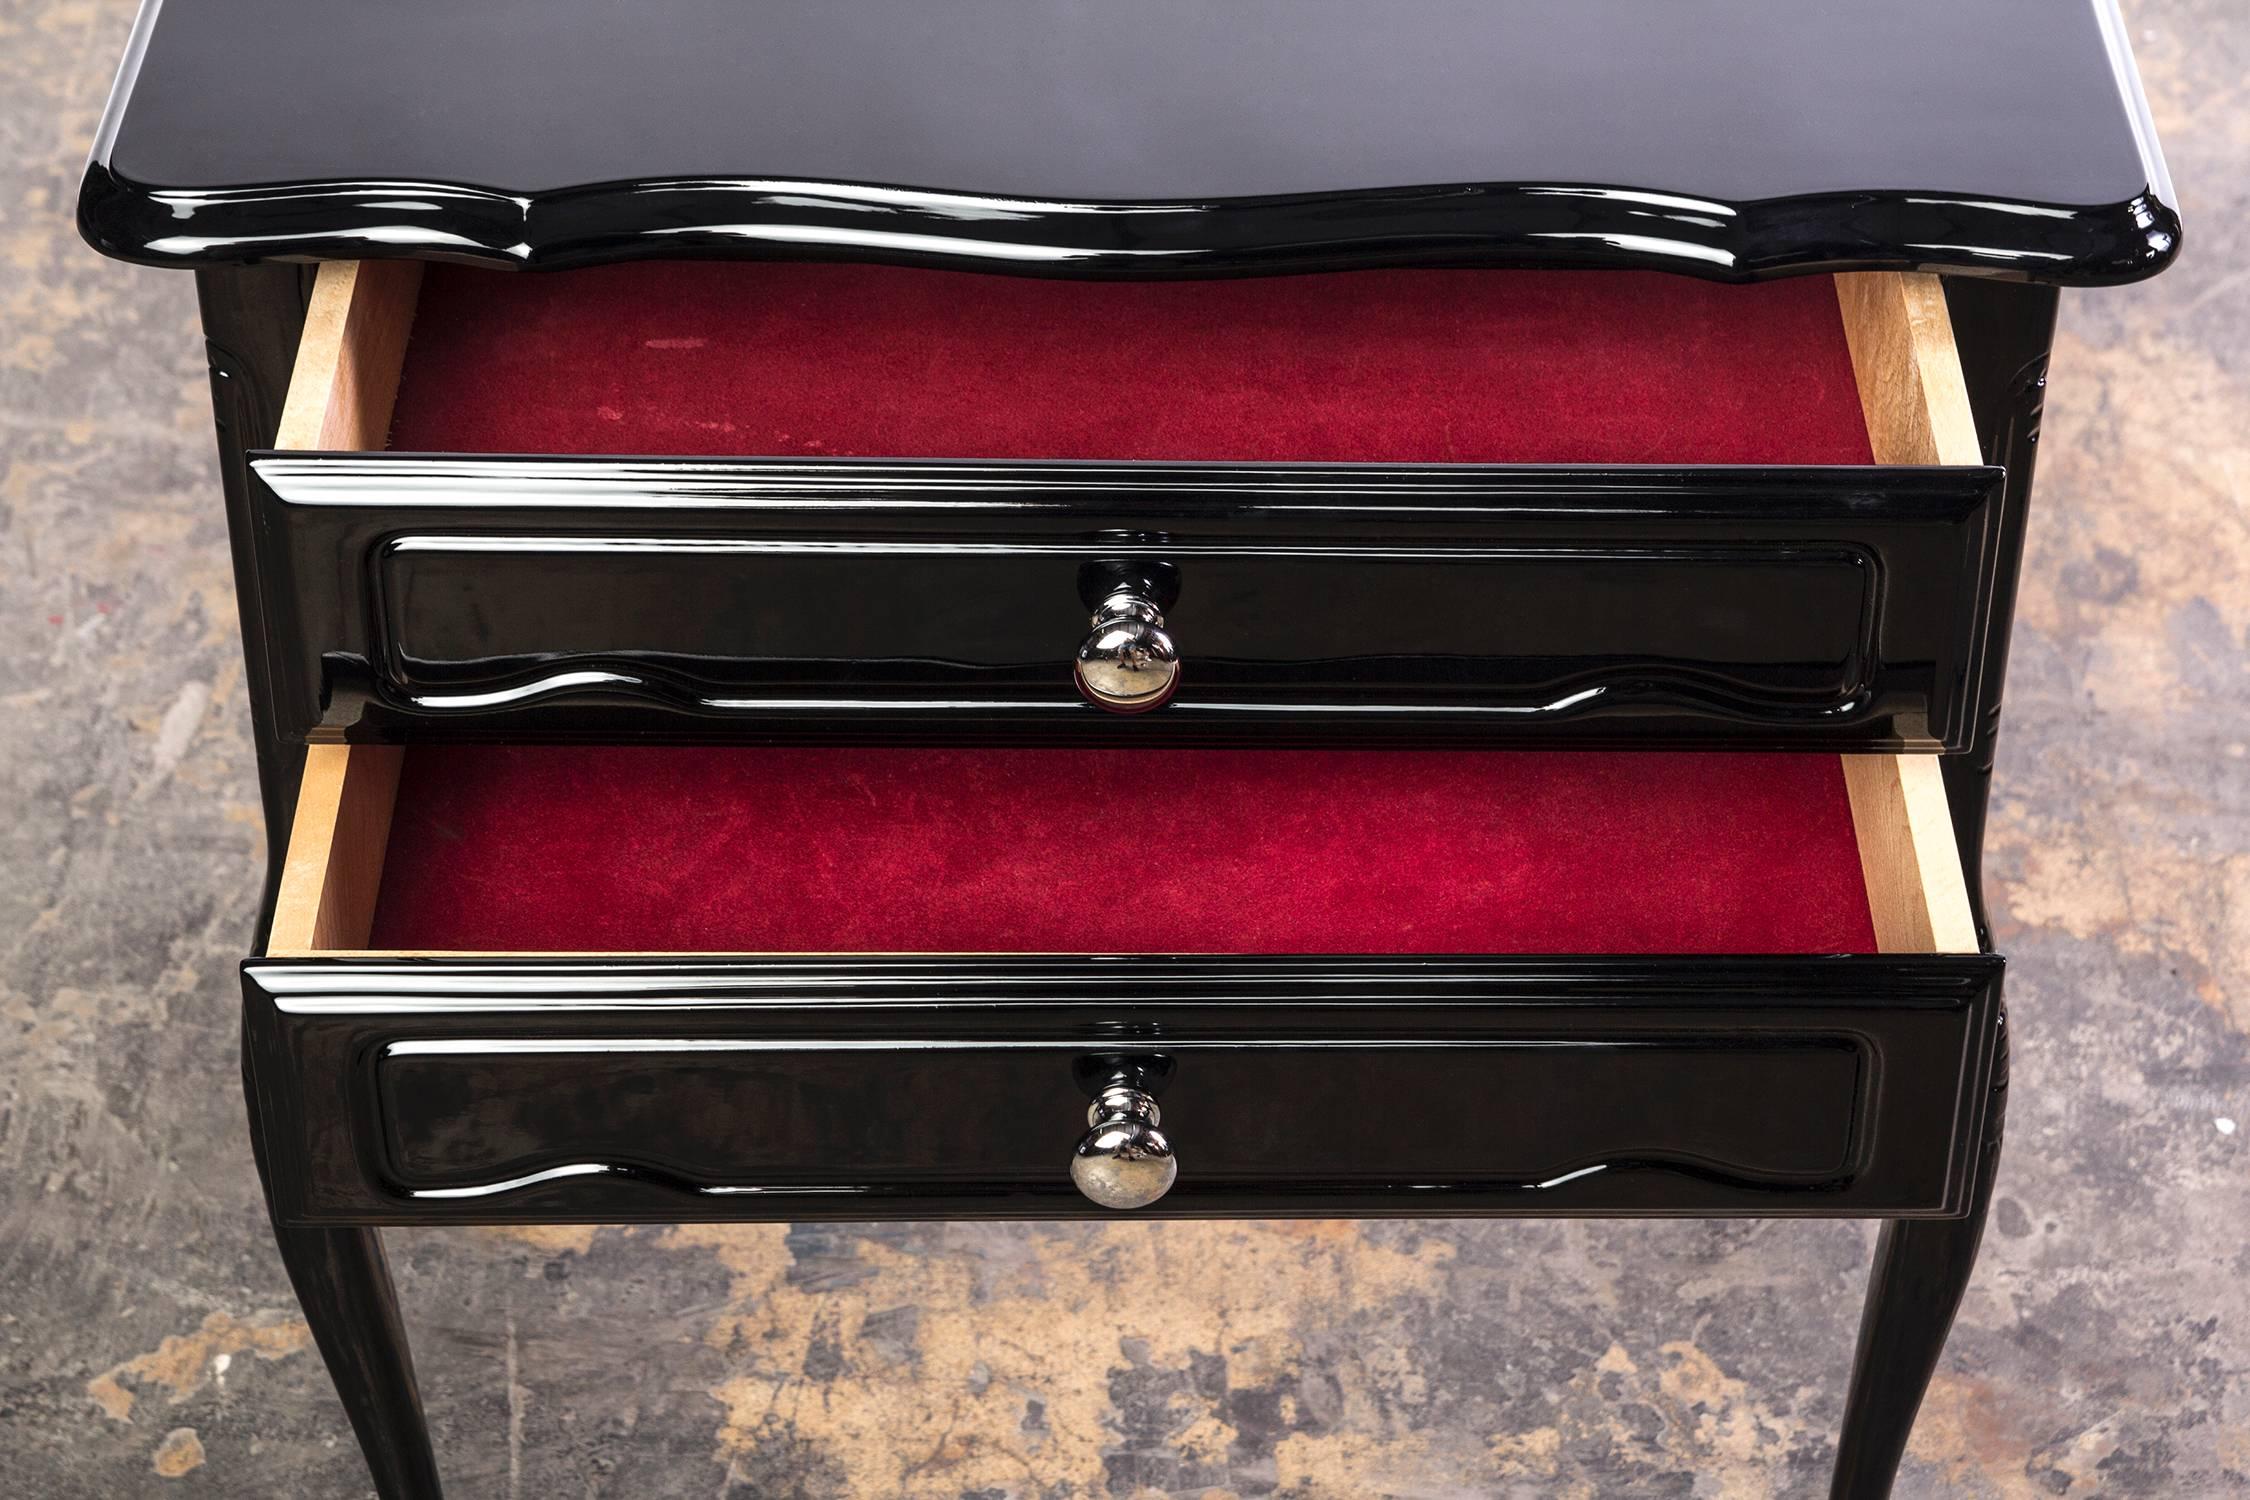 Dieser schicke französische Art Deco Beistelltisch verfügt über zwei Schubladen mit verchromten Griffen und geschwungenen Beinen, die in schwarzem Hochglanzlack lackiert sind. Die Schubladen sind mit Vin de Rouge-Samt ausgekleidet.